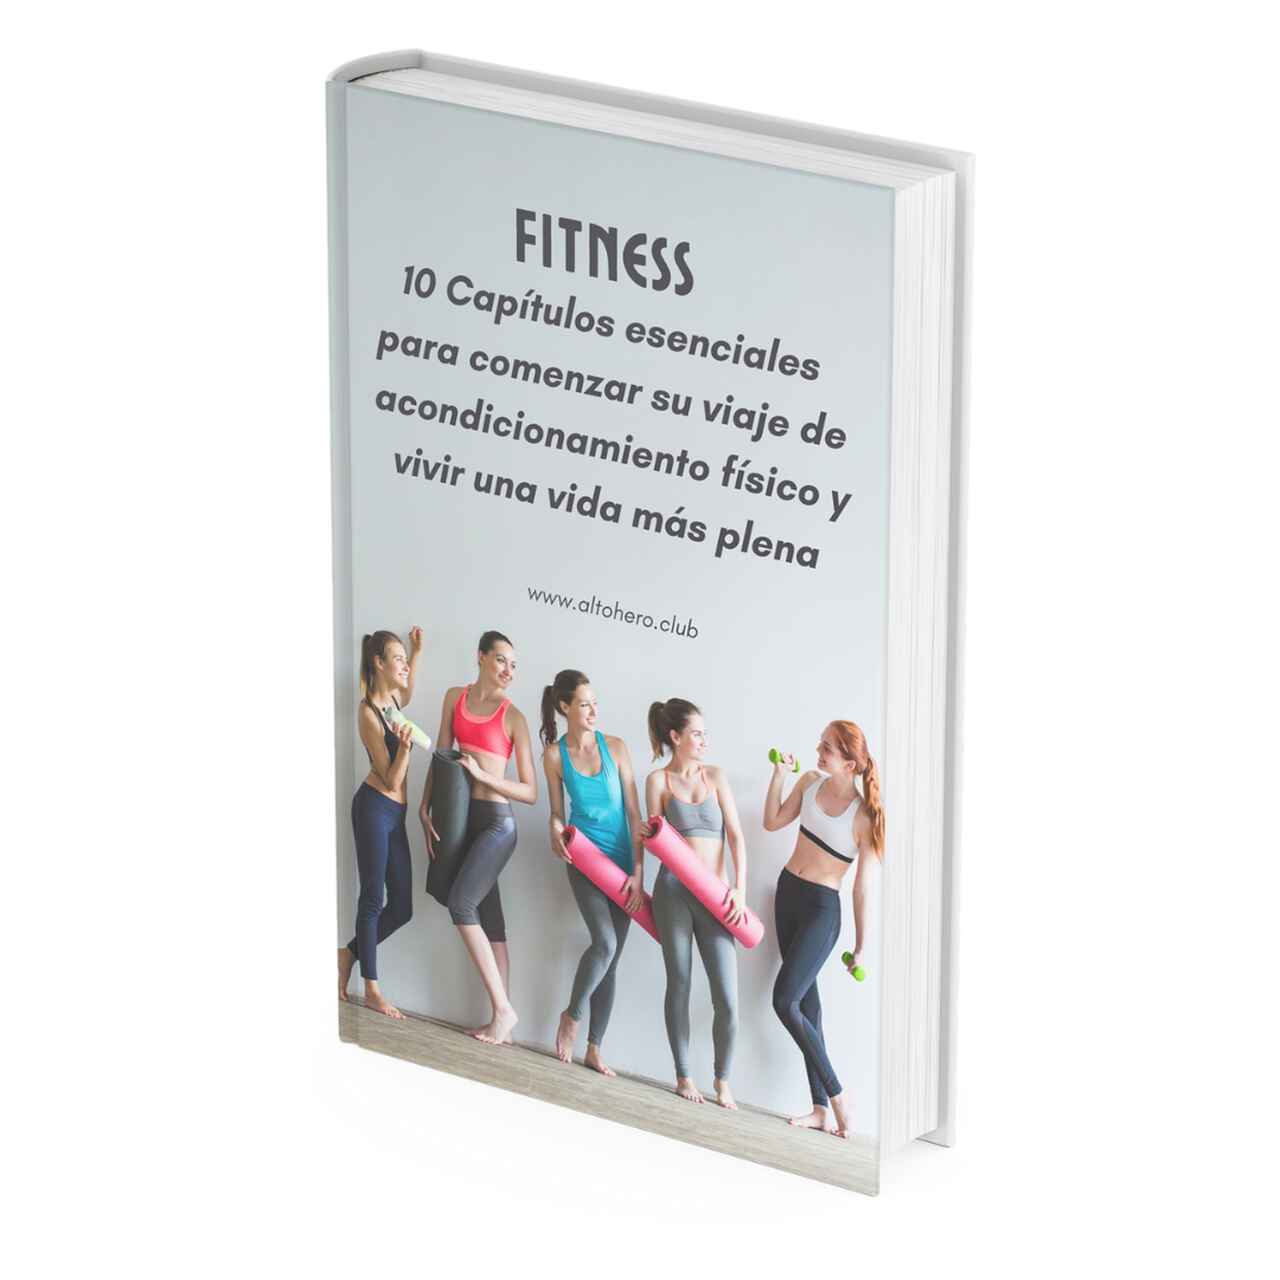  Iniciación al Fitness  2 Ebooks GRATIS